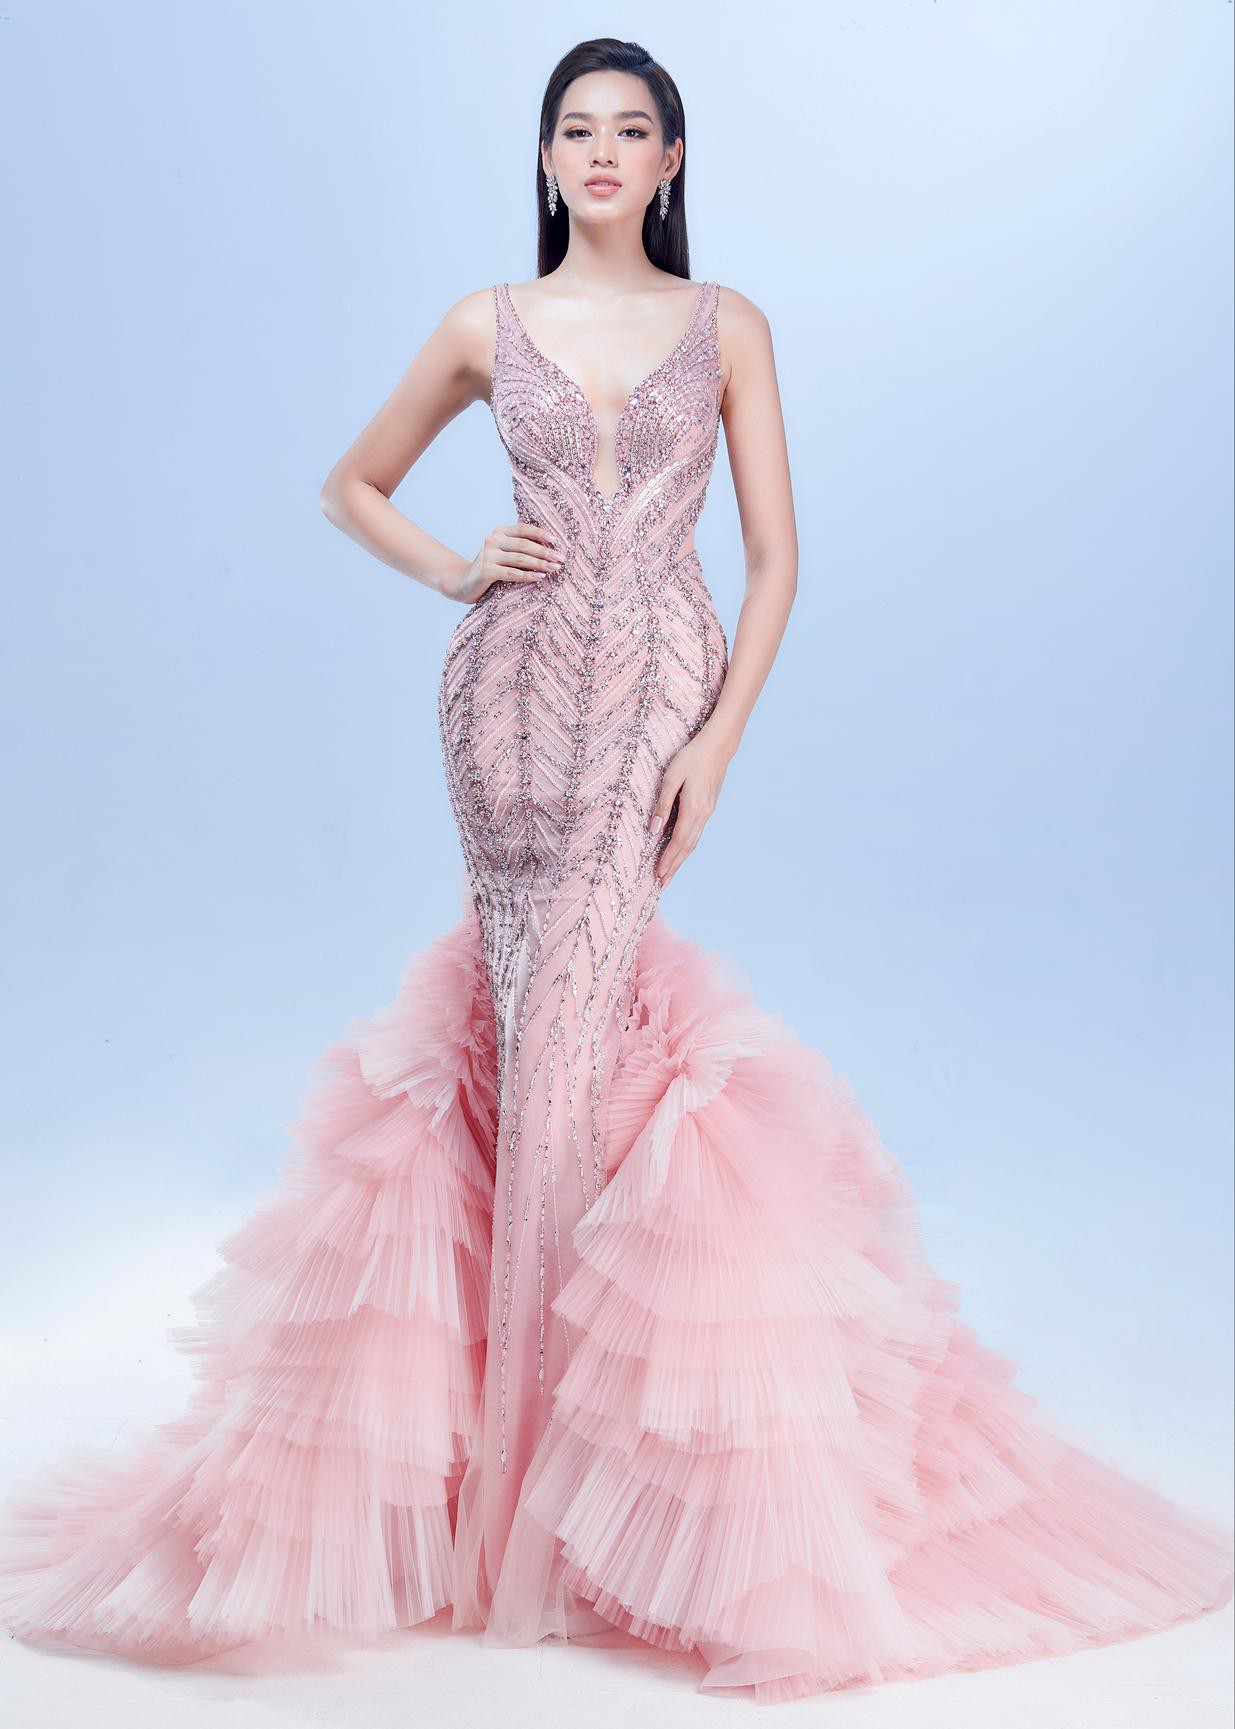 Mặc lại váy chung kết Miss World của Đỗ Thị Hà, Lâm Khánh Chi hóa búp bê quyến rũ ở tuổi 45-6